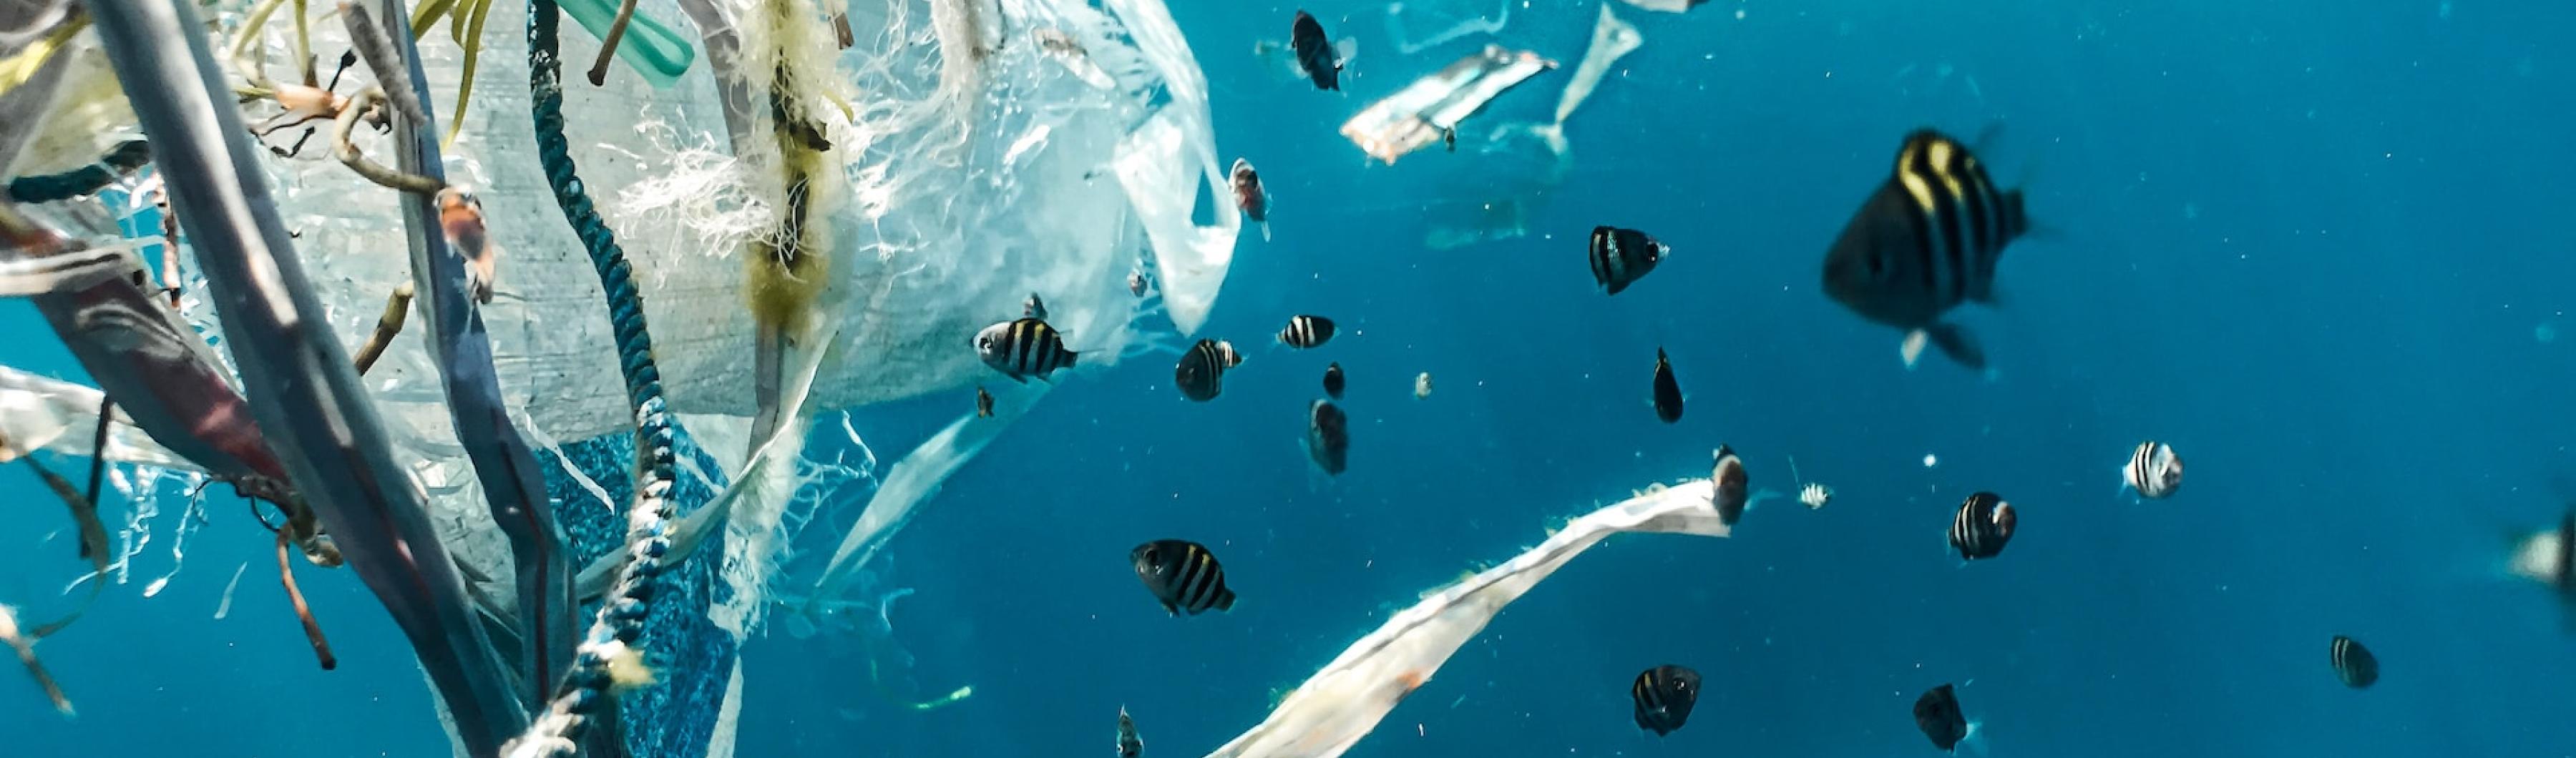 Poissons dans l'océan et pollution plastique